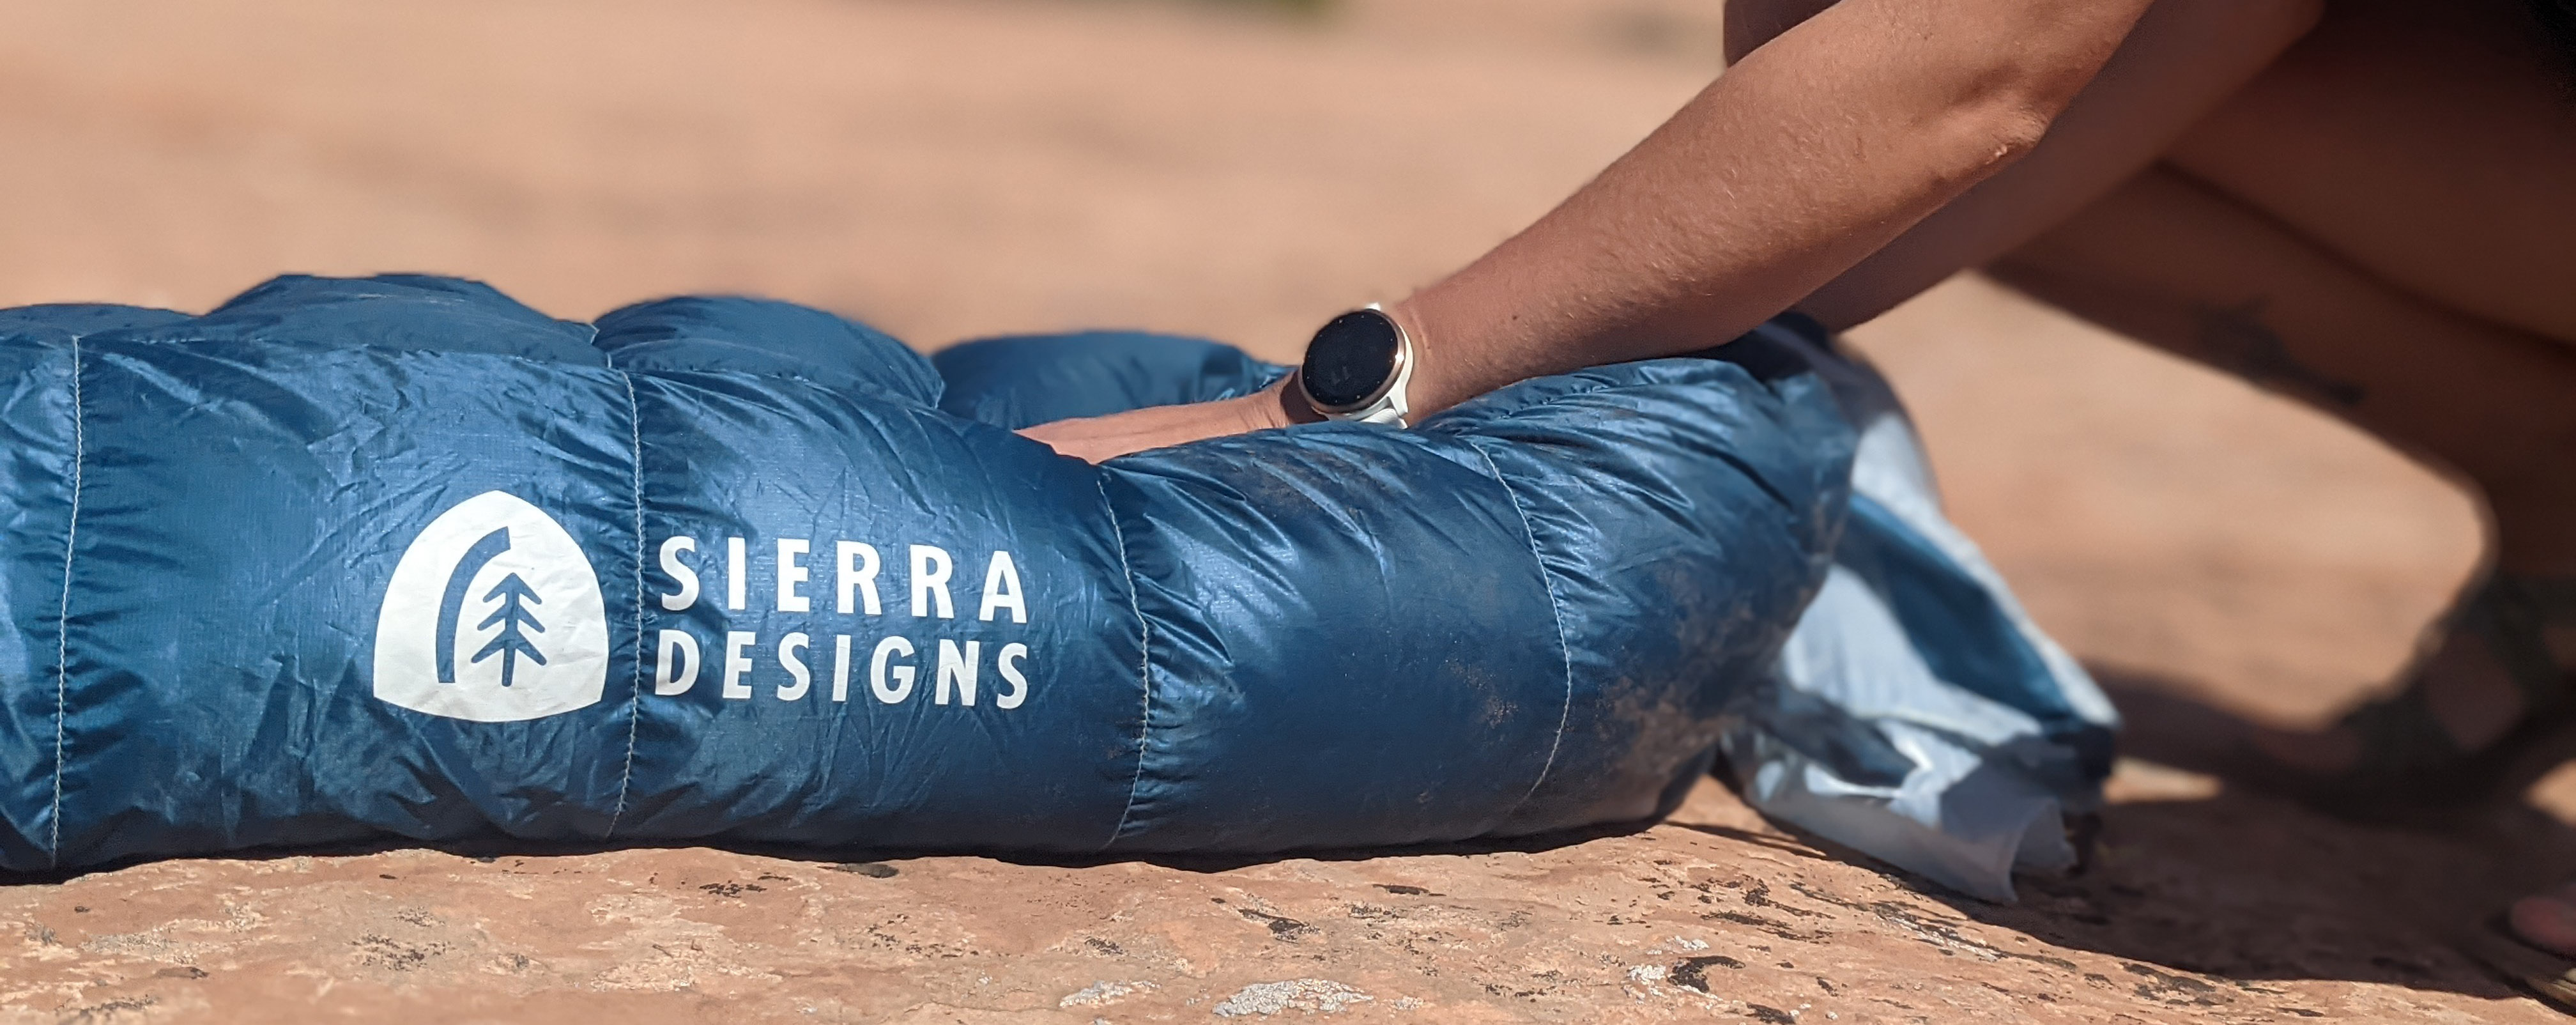 Sierra-designs-get-down-sleeping-bacg-review-dirtbagdreams.com